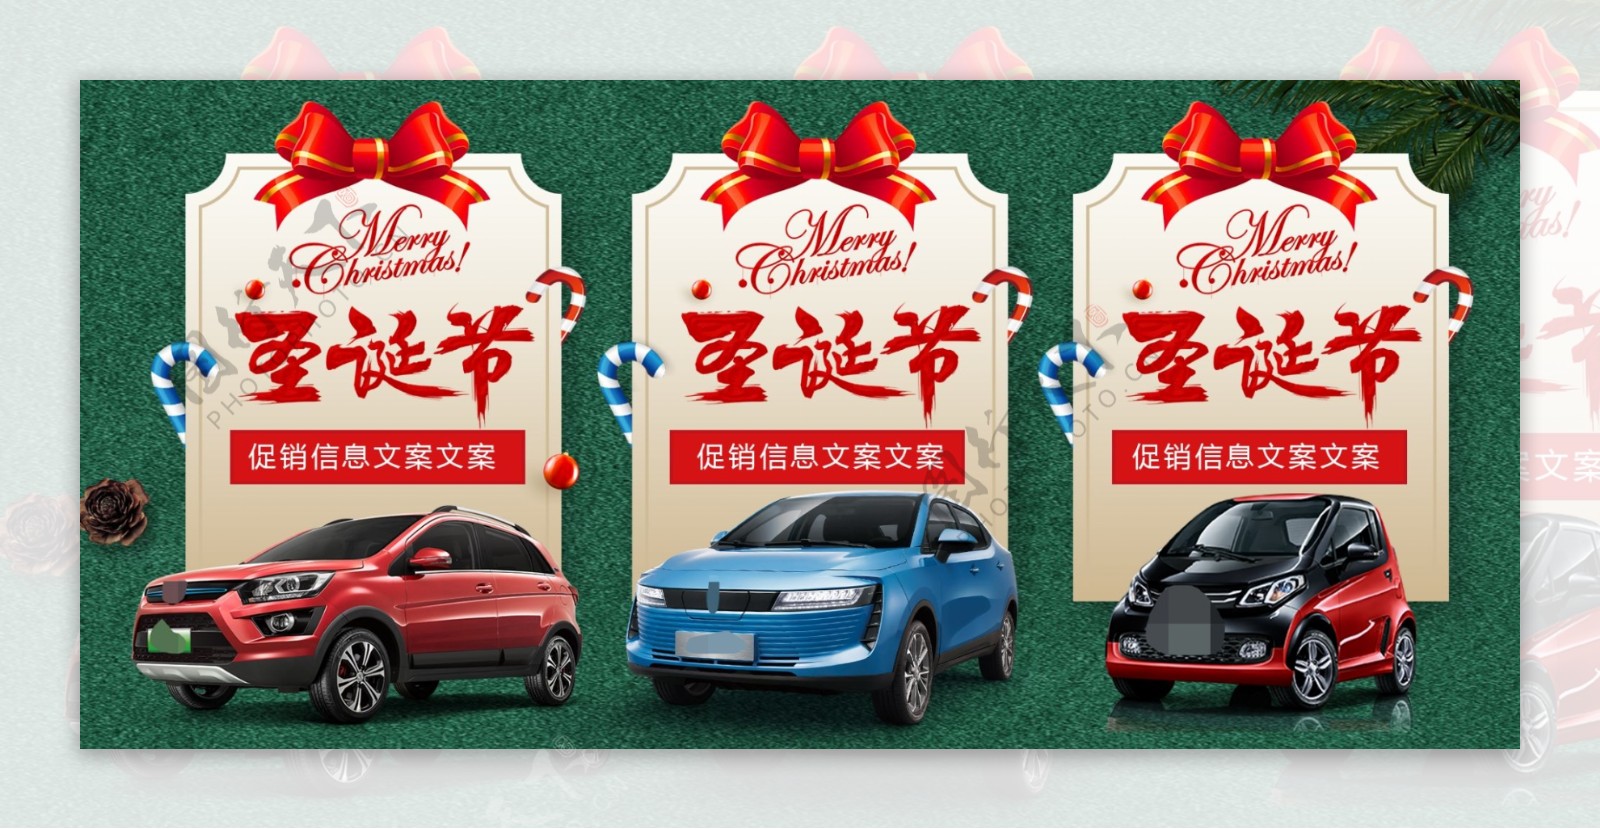 圣诞节活动海报汽车促销背景板